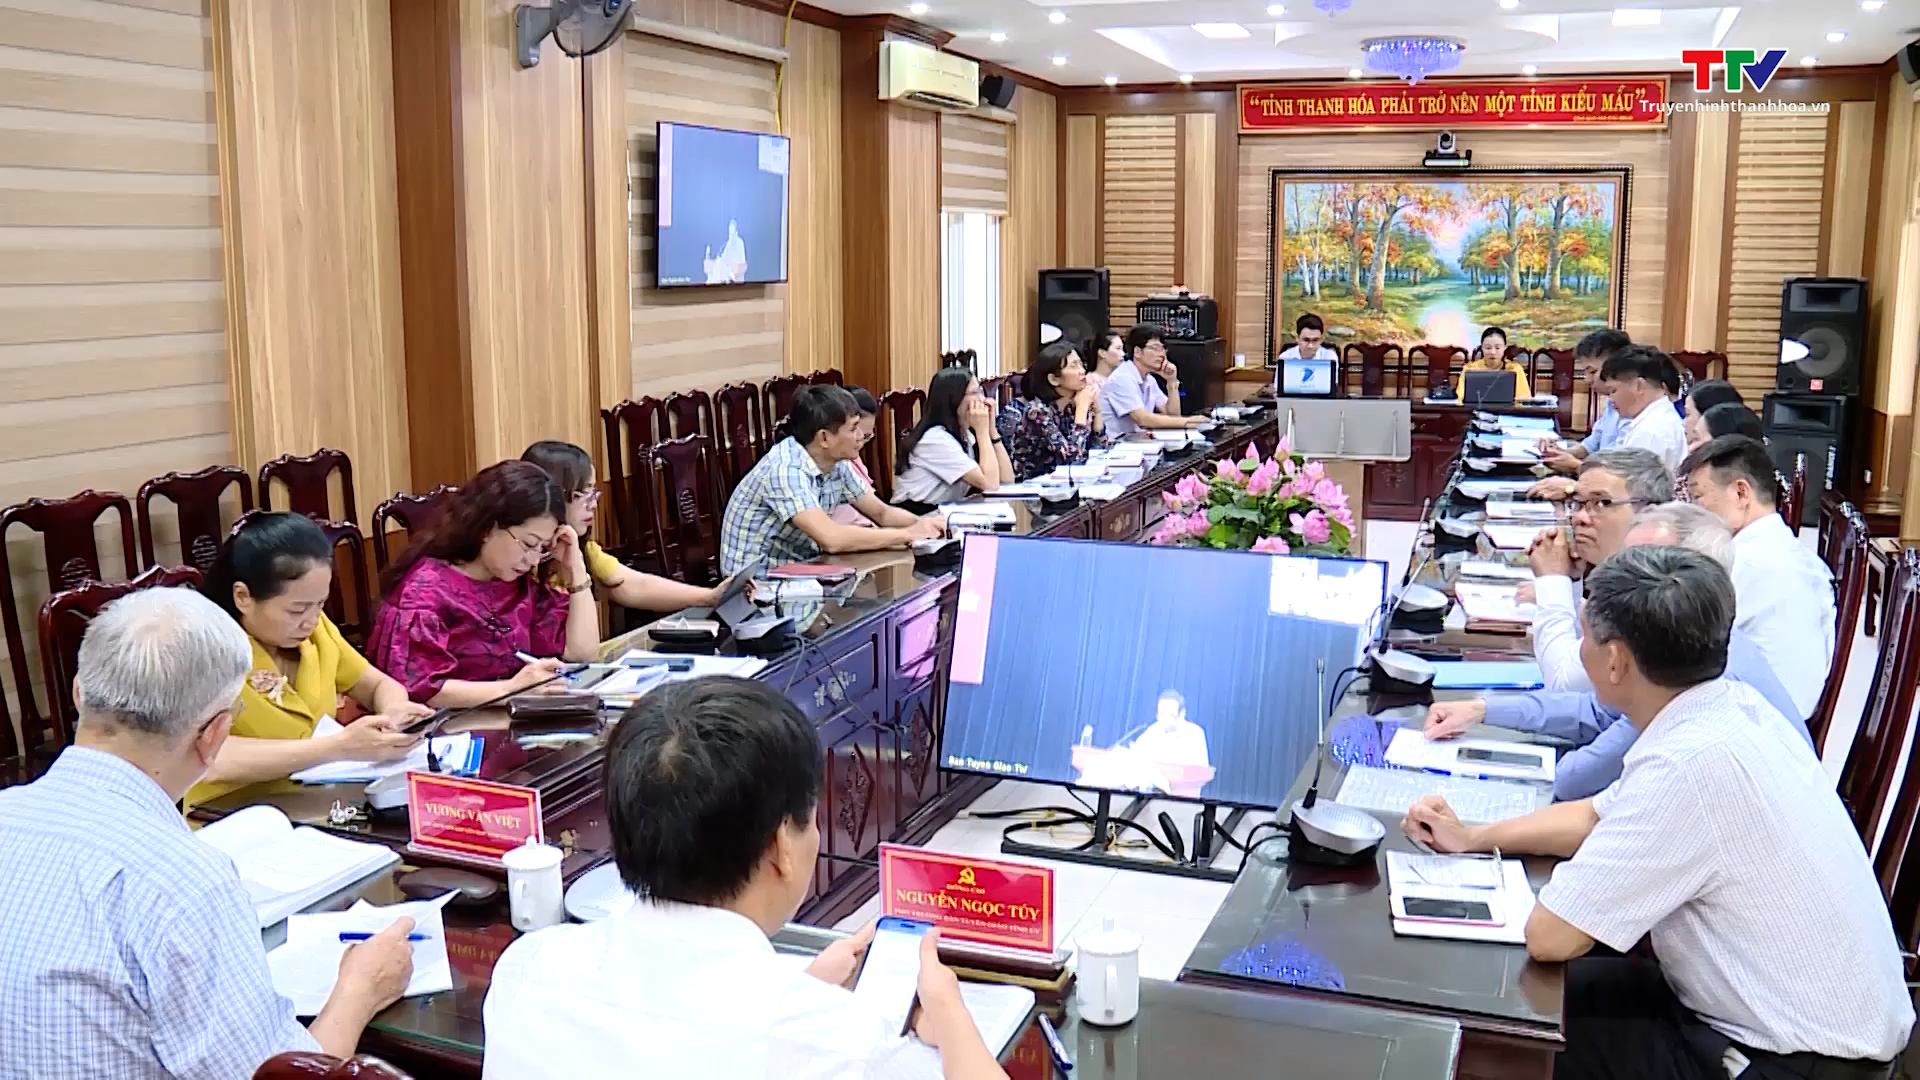 Hội thảo vai trò của gia đình, dòng họ trong xây dựng xã hội học tập, góp phần giữ gìn, phát huy giá trị văn hoá và những phẩm chất tốt đẹp của con người Việt Nam trong thời kỳ mới - Ảnh 2.